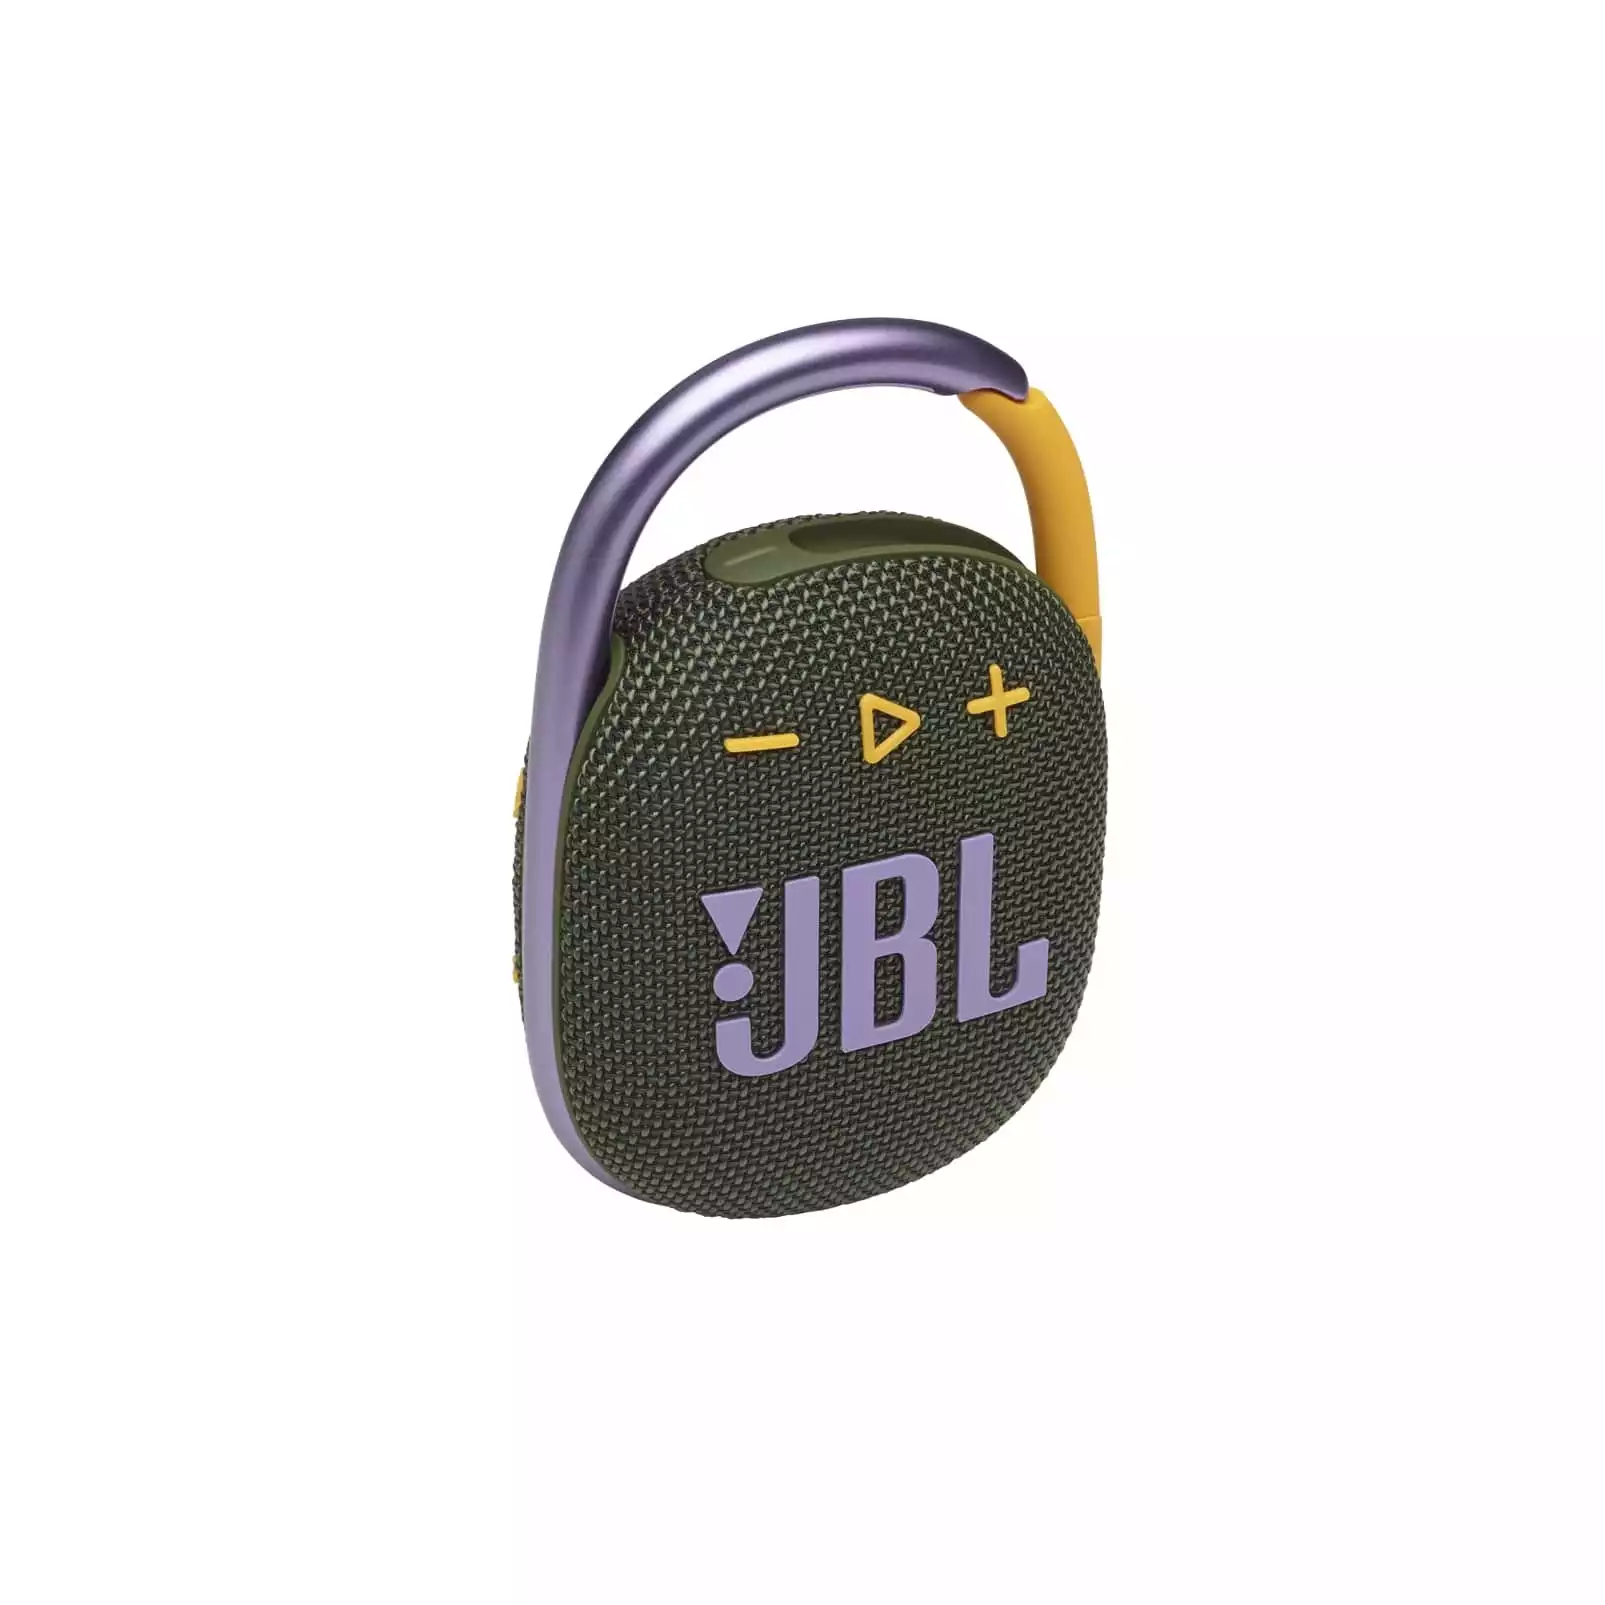 JBL-prenosni-zvocnik-CLIP4-zelen-aliansa-si-1.jpg.webp